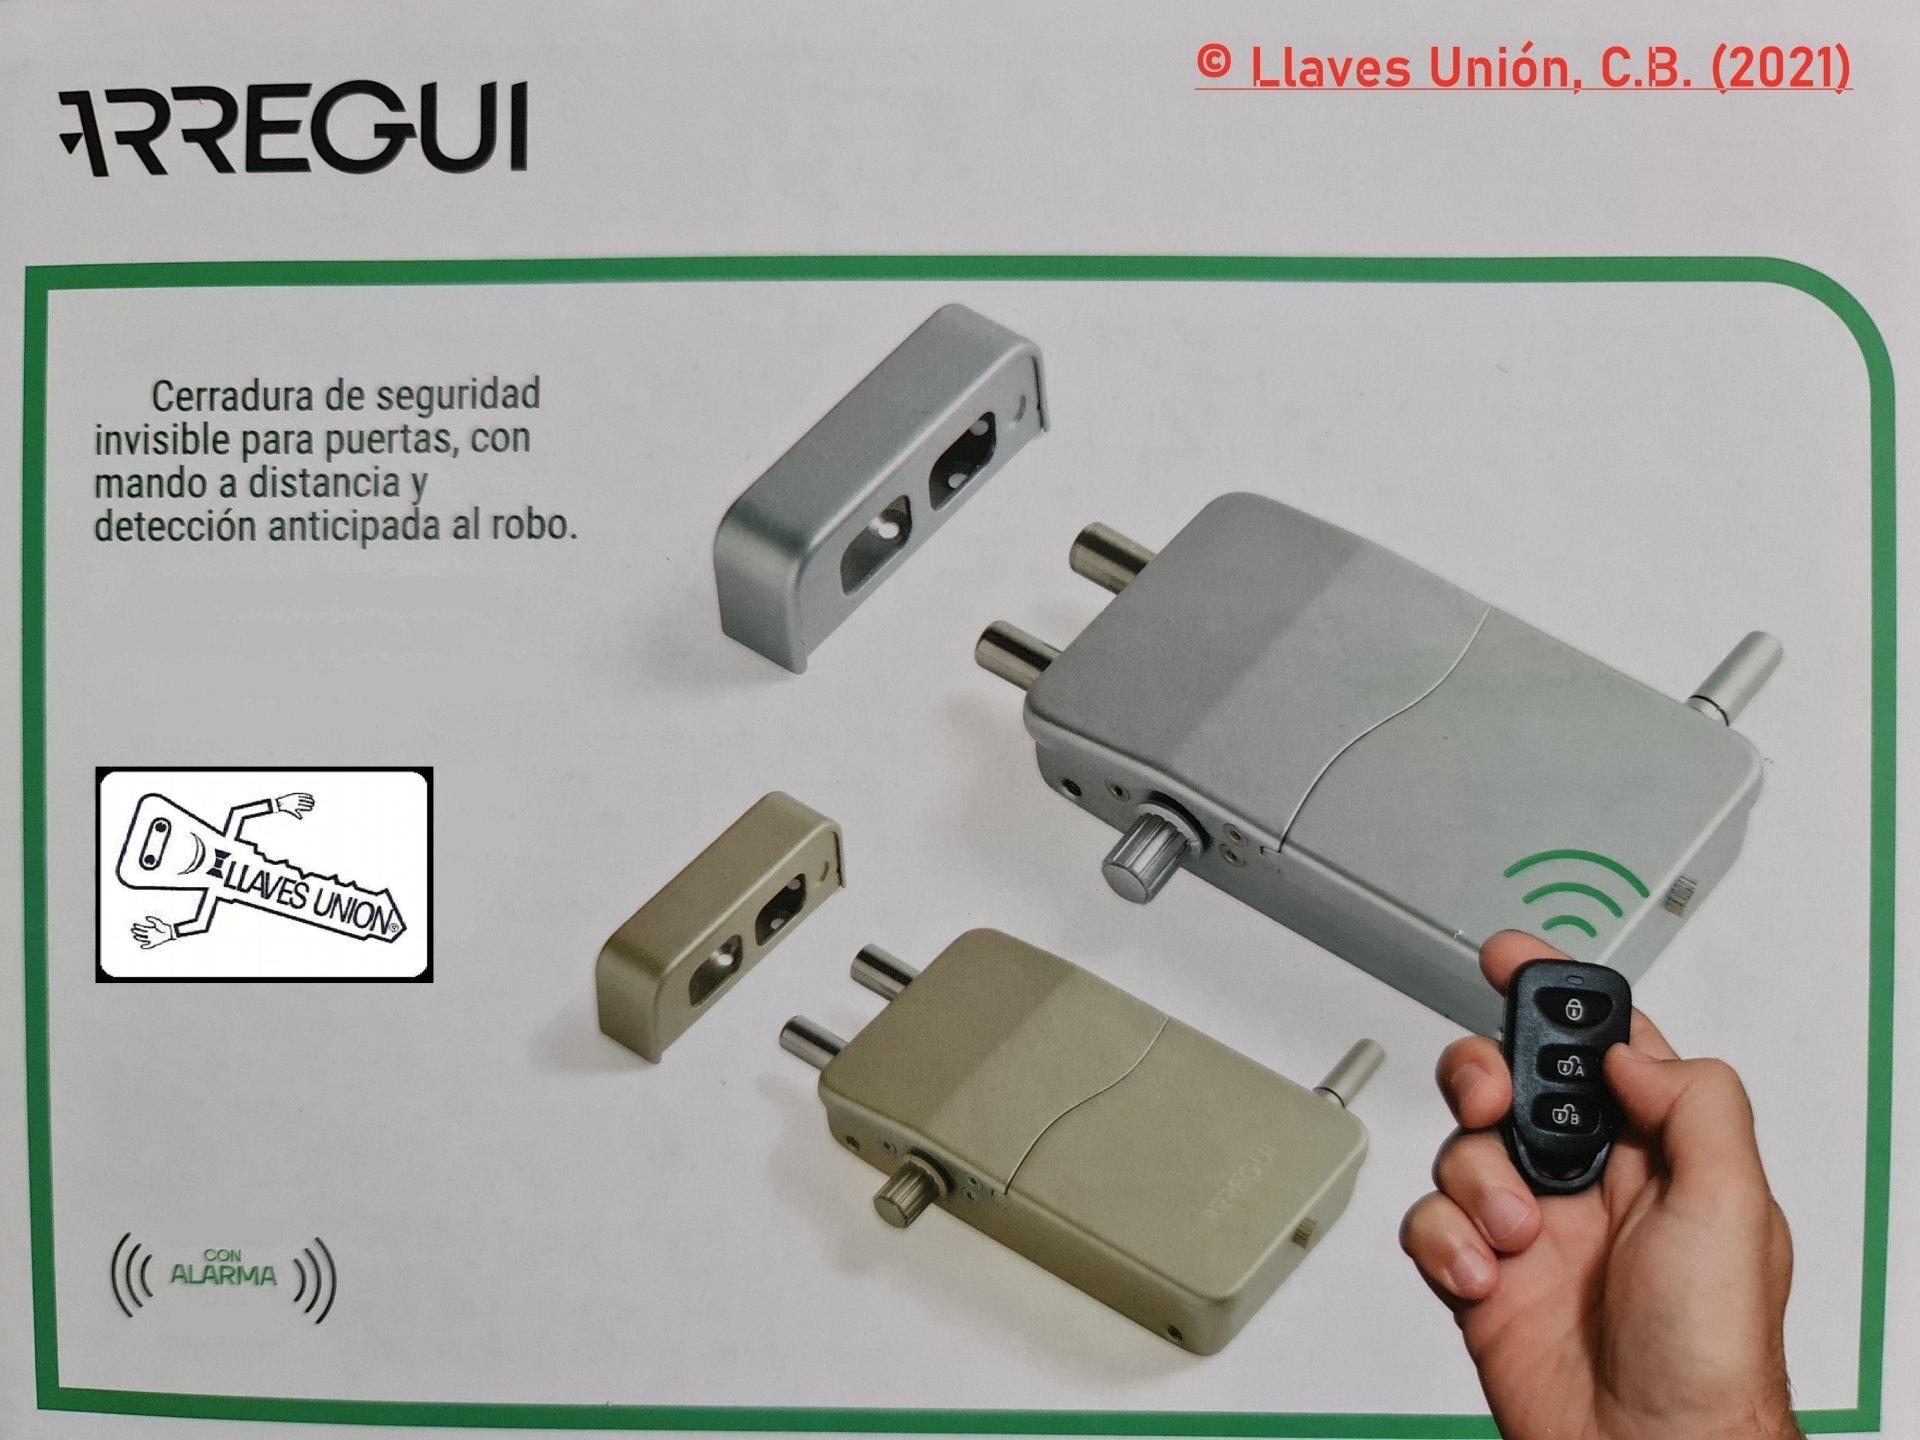 Cerradura invisible con mando a distancia - Seguridad para objetos